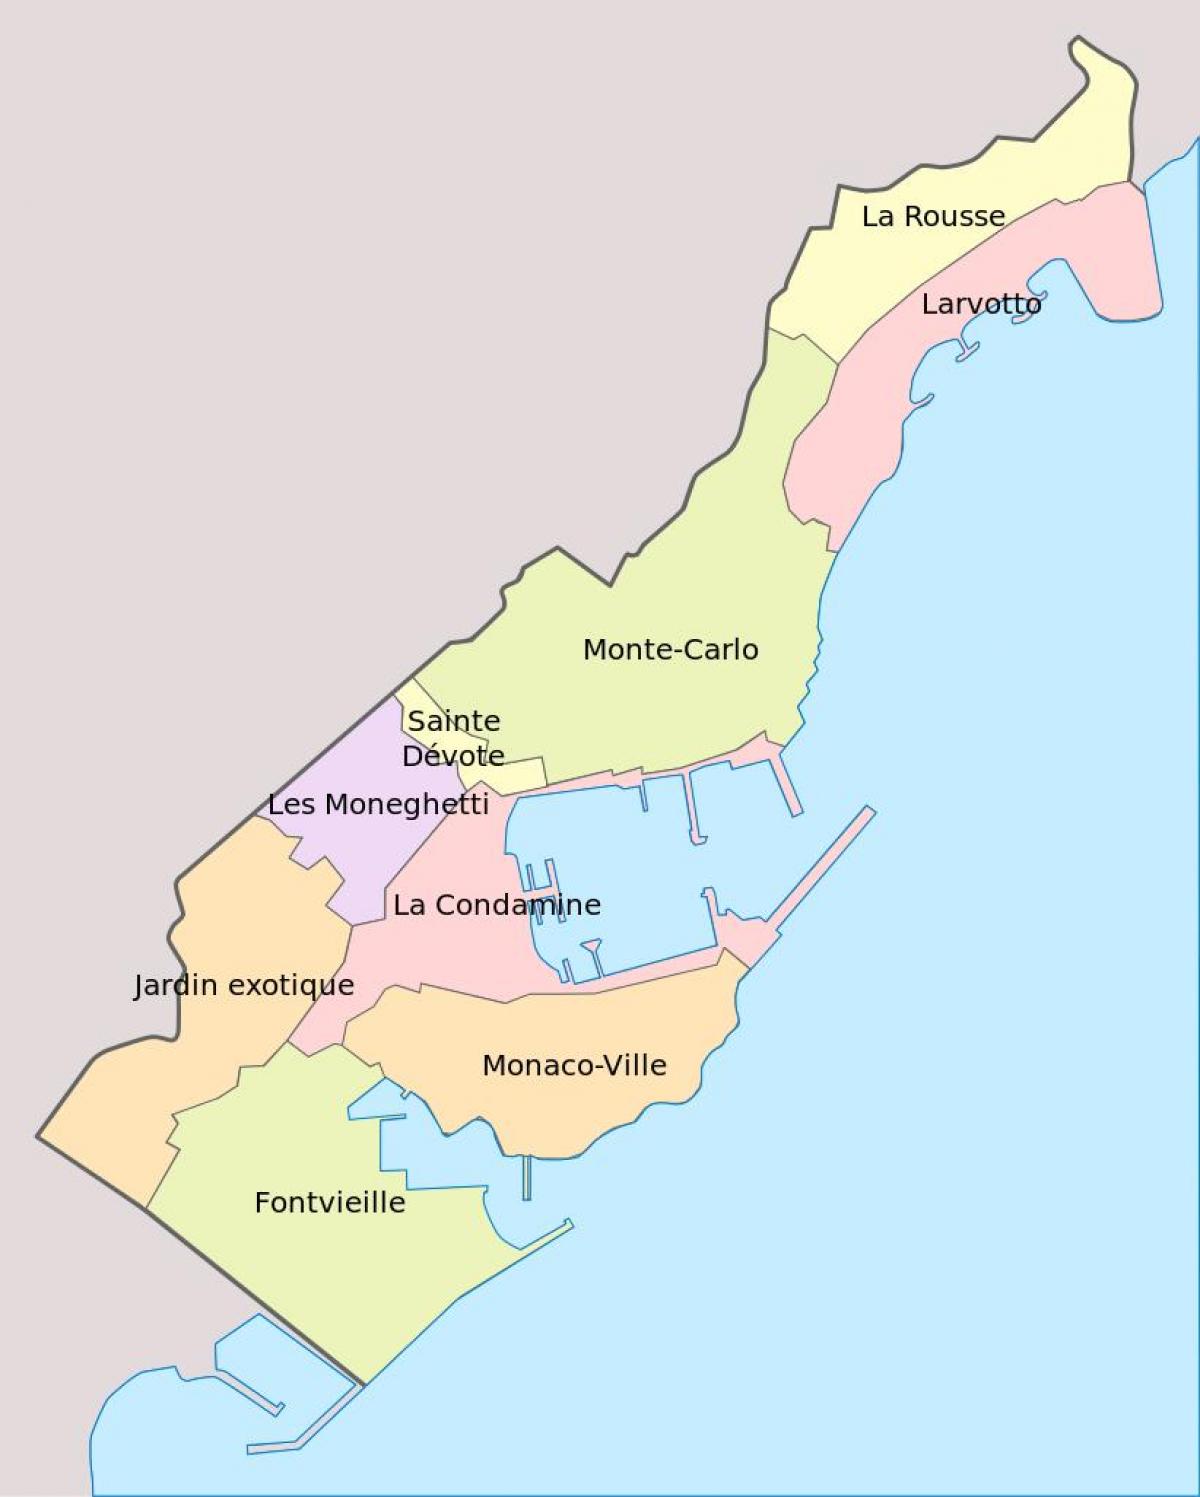 Mapa do distrito do Mónaco